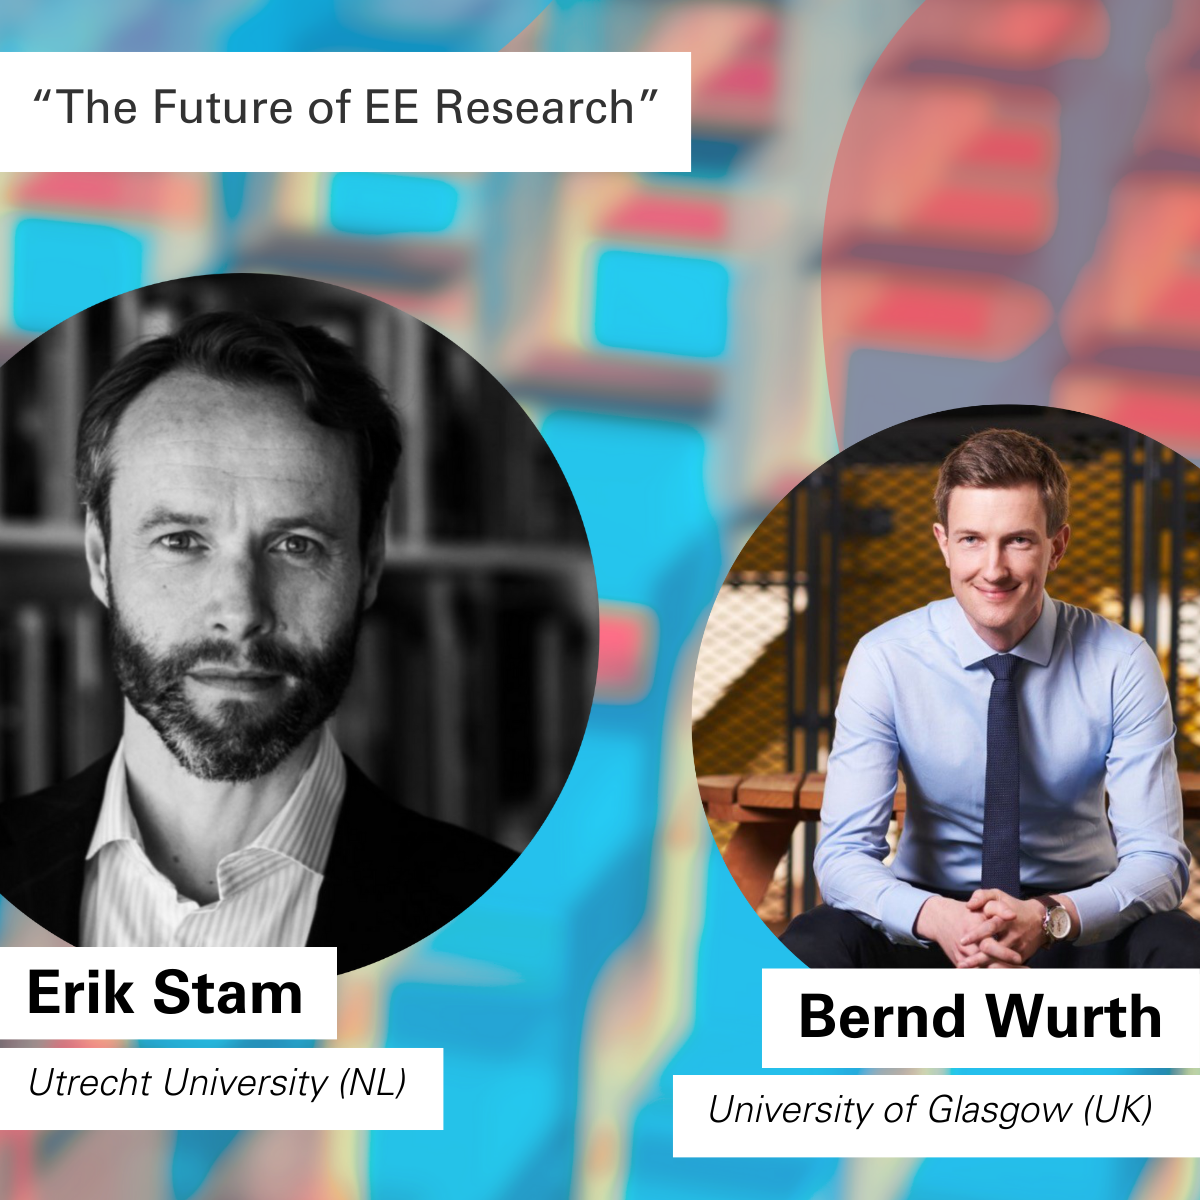 Zum Thema "Die Zukunft der EE-Forschung" begrüßen wir Erik Stam (Universität Utrecht, NL) und Bernd Wurth (University of Glasgow, UK).